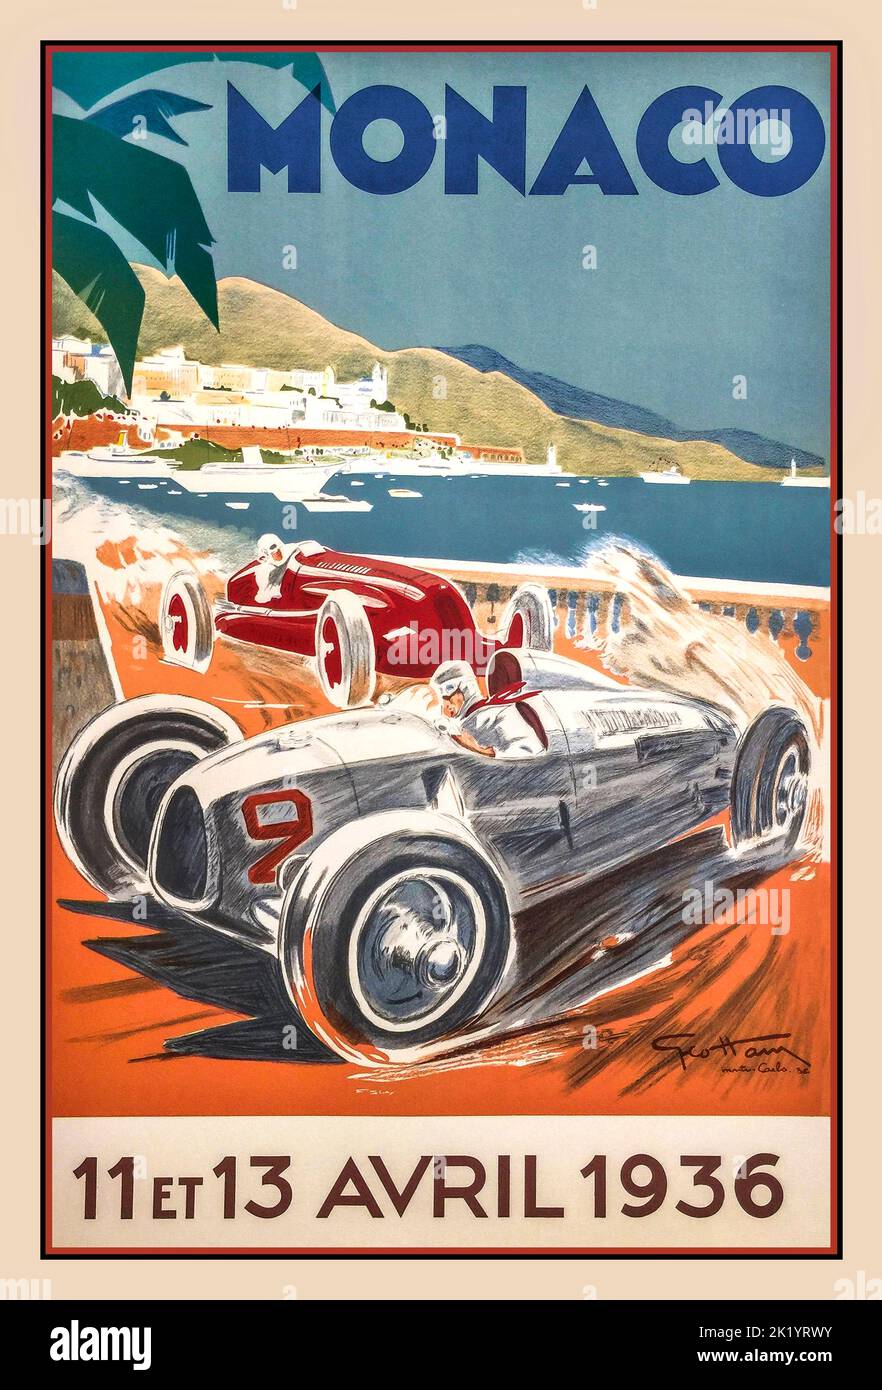 Grand Prix de Mónaco Vintage 1936: Cartel para la carrera de automovilismo del Grand Prix de Mónaco El Grand Prix de Mónaco de 1934 (formalmente el VI Grand Prix de Mónaco) fue una carrera de automovilismo del Grand Prix celebrada el 2 de abril de 1934 en el Circuit de Mónaco dentro y fuera de Monte Carlo. La carrera fue ganada por Guy Moll, un argelino recién reclutado de la Scuderia Ferrari, con un Alfa Romeo Tipo B/P3 Foto de stock